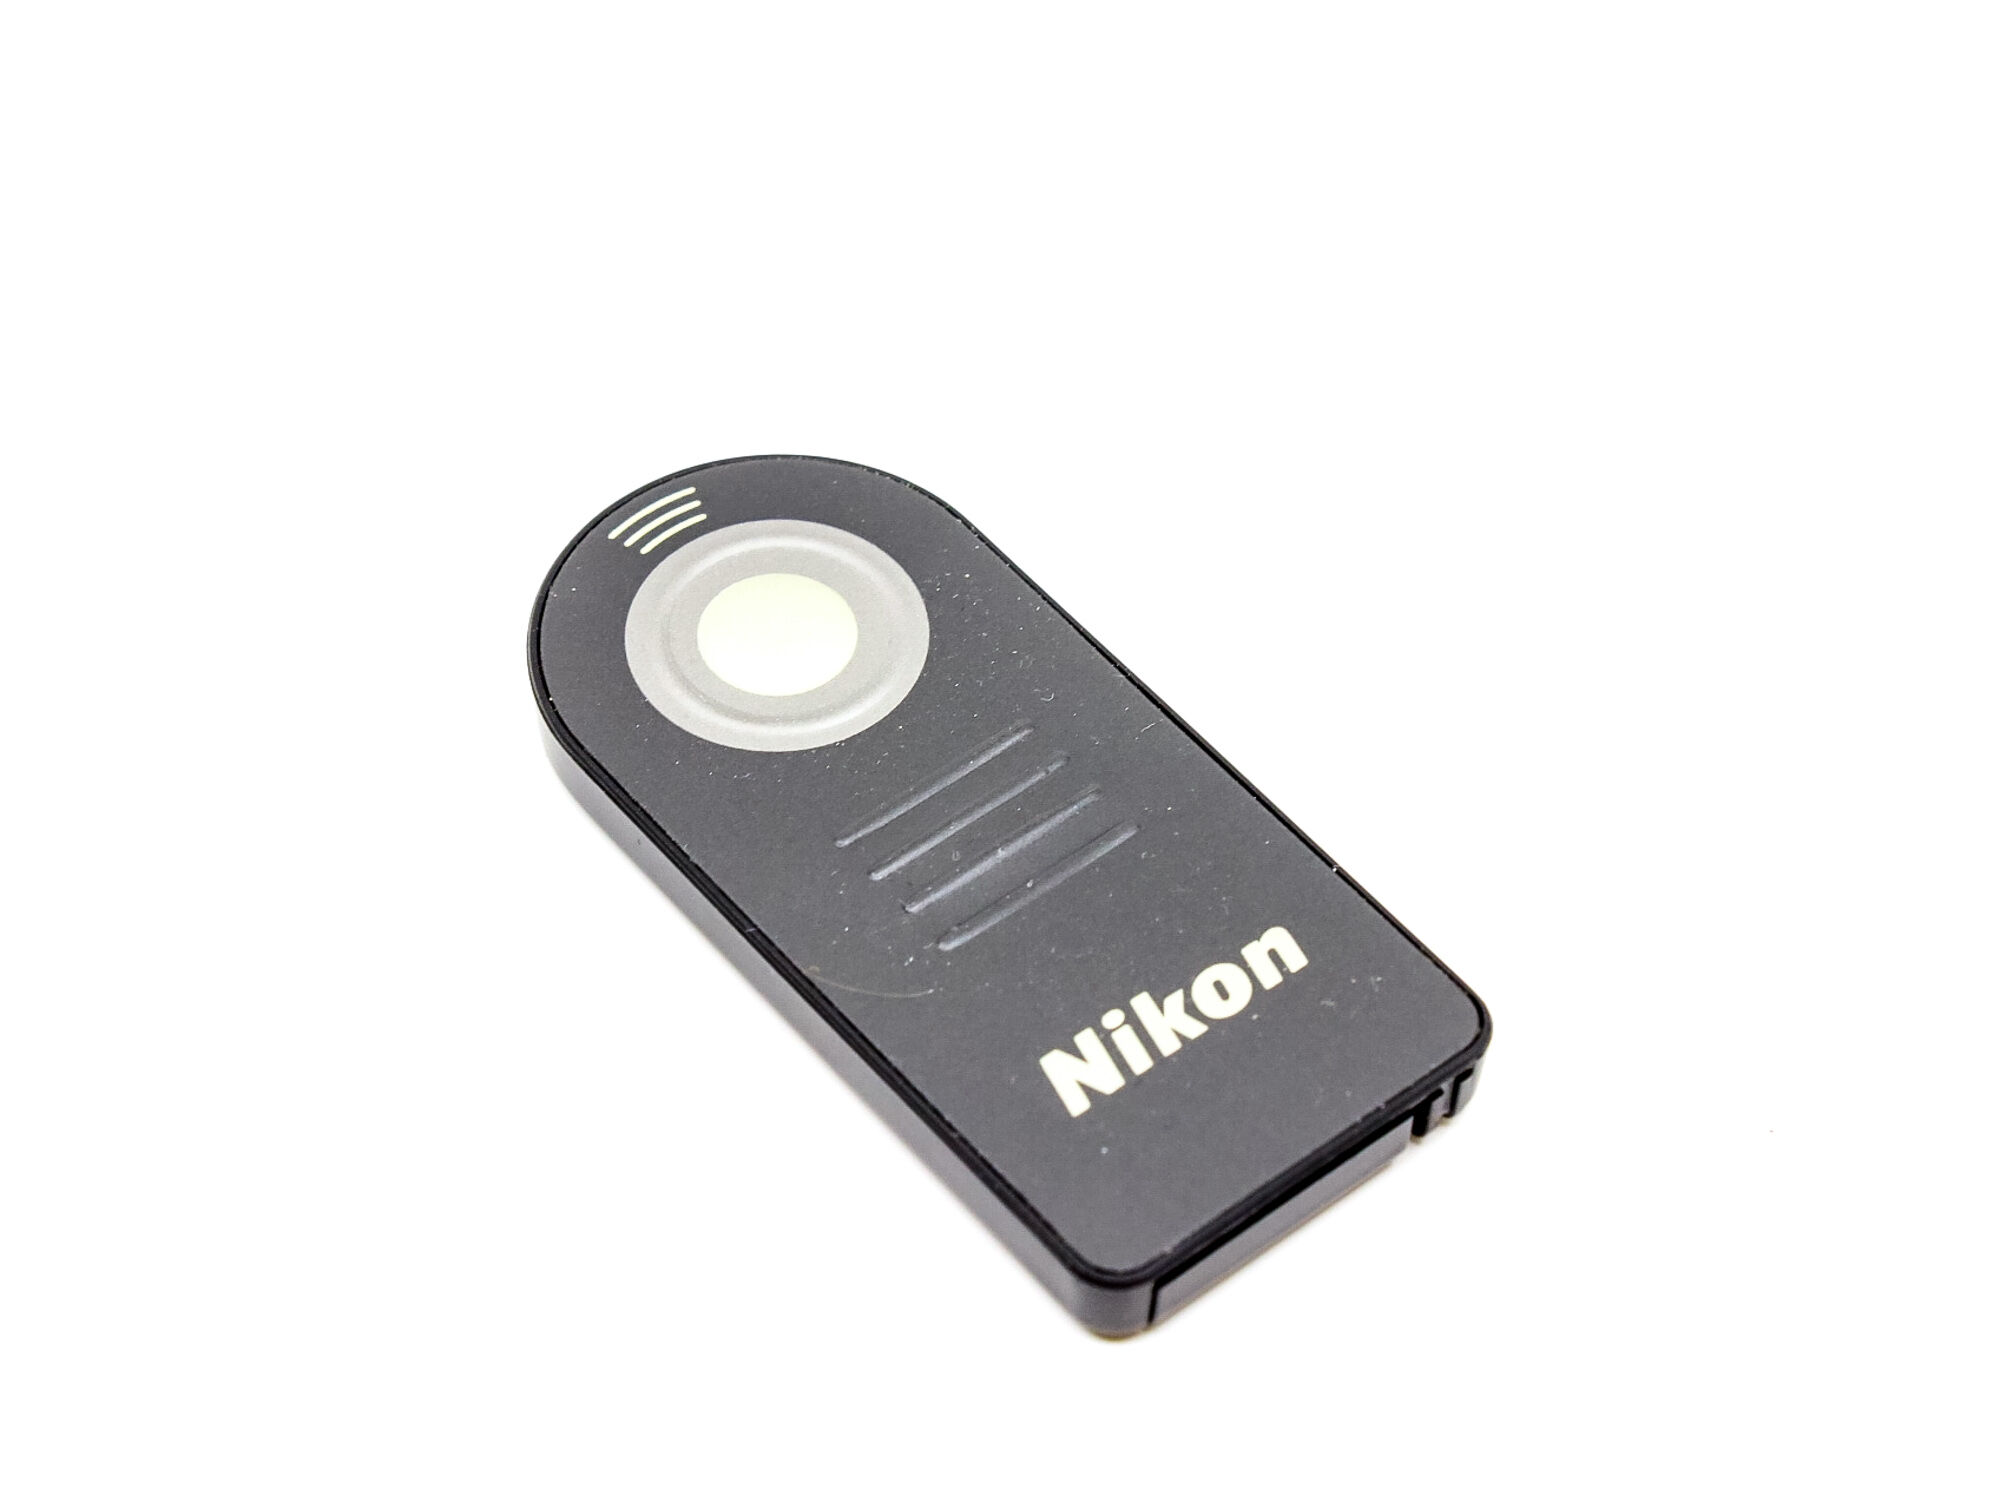 nikon ml-l3 remote control (condition: good)